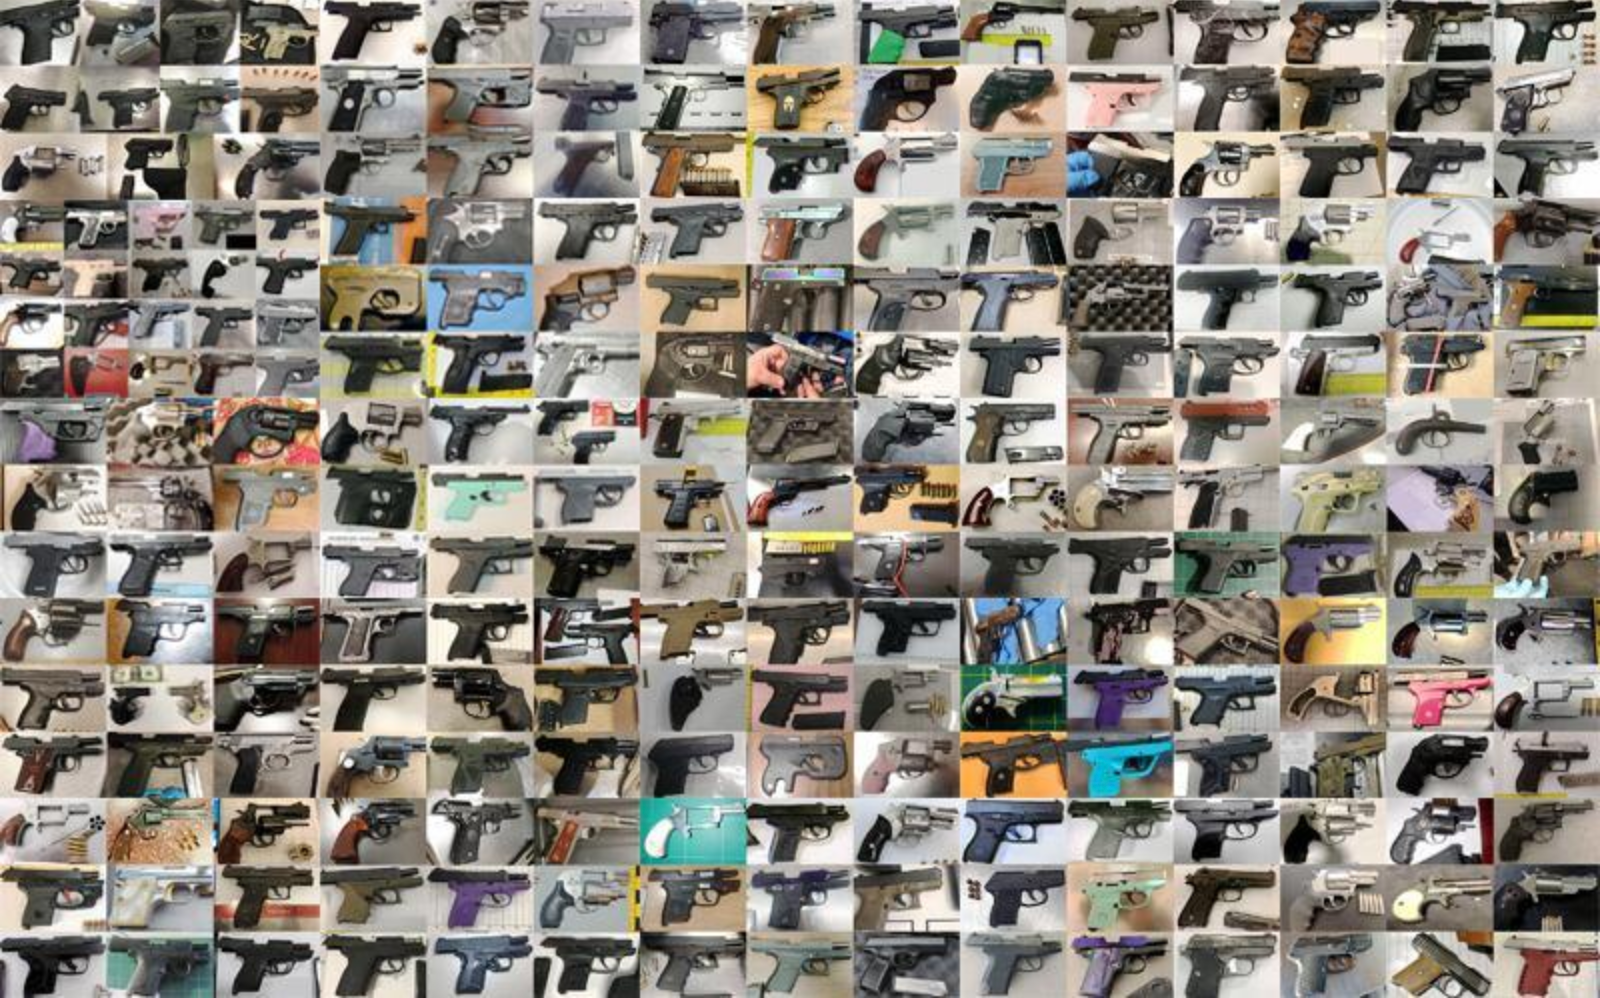 More than 12 guns a day seized at US airports last year, says the TSA